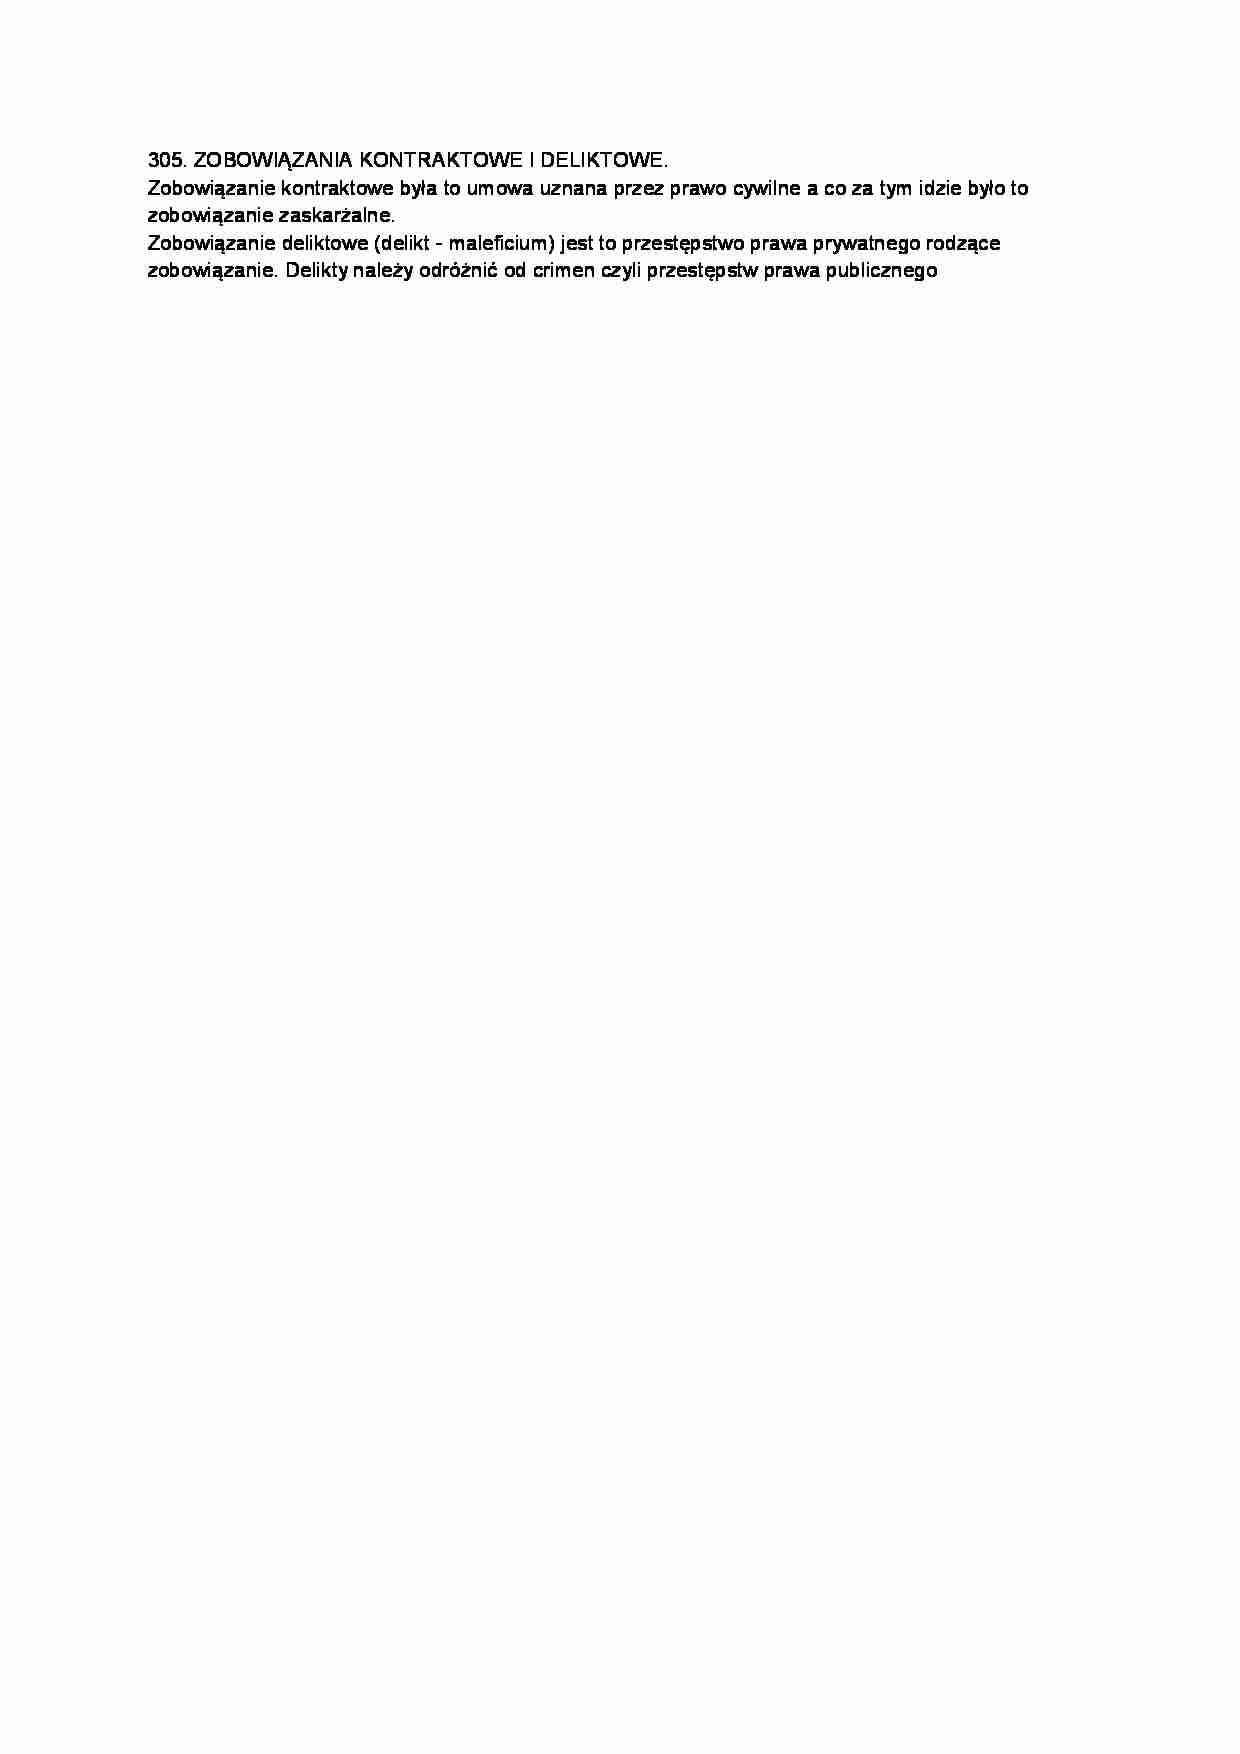 Zobowiązania kontraktowe i deliktowe-opracowanie - strona 1